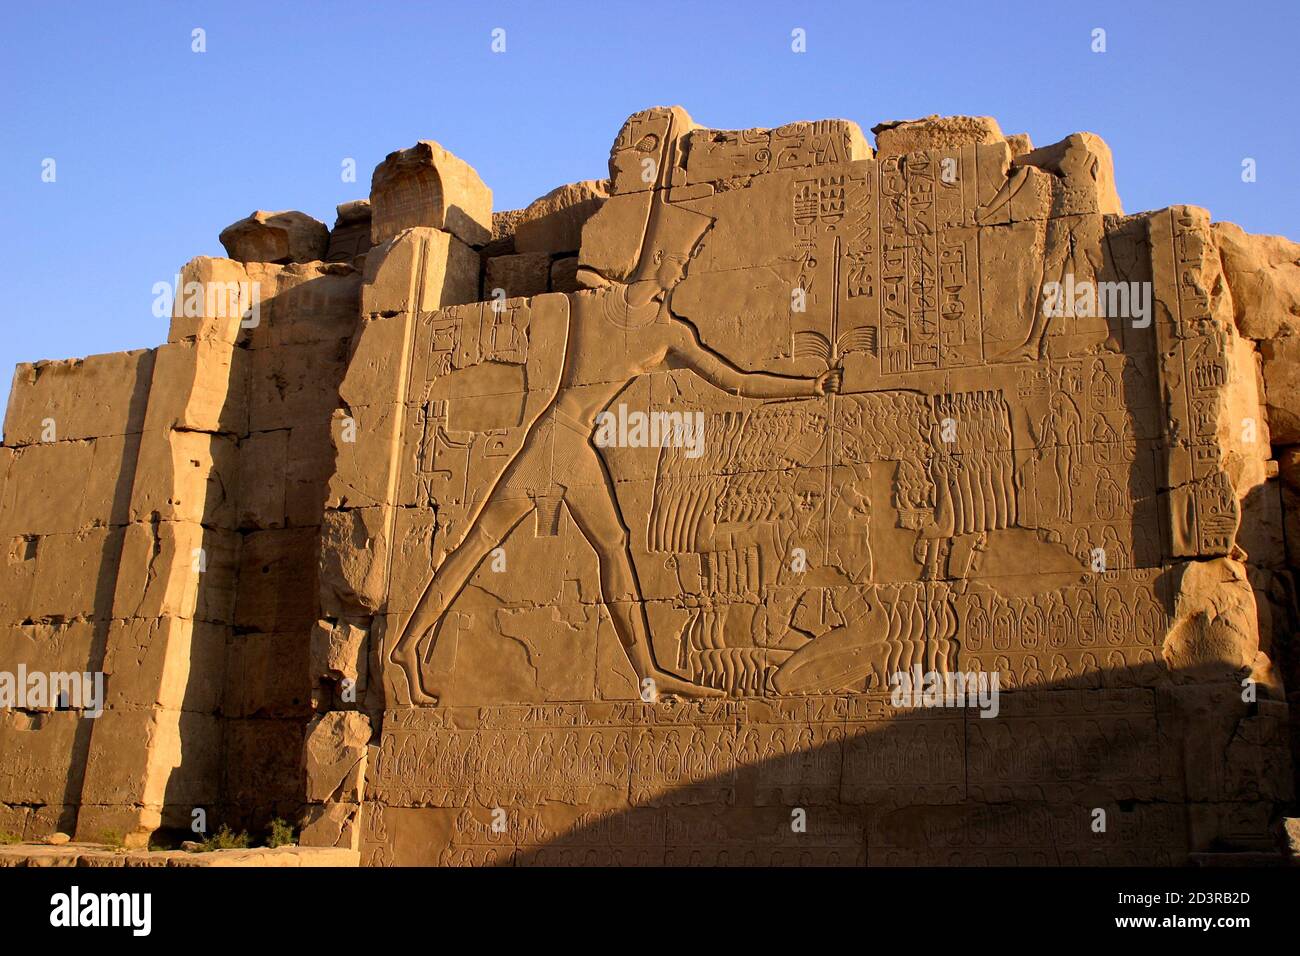 Der Tempel von Karnak ist der zweitgrößte Tempel im alten Ägypten und ein altes religiöses Zentrum. Es liegt am Ufer des Nils in Luxor. Stockfoto